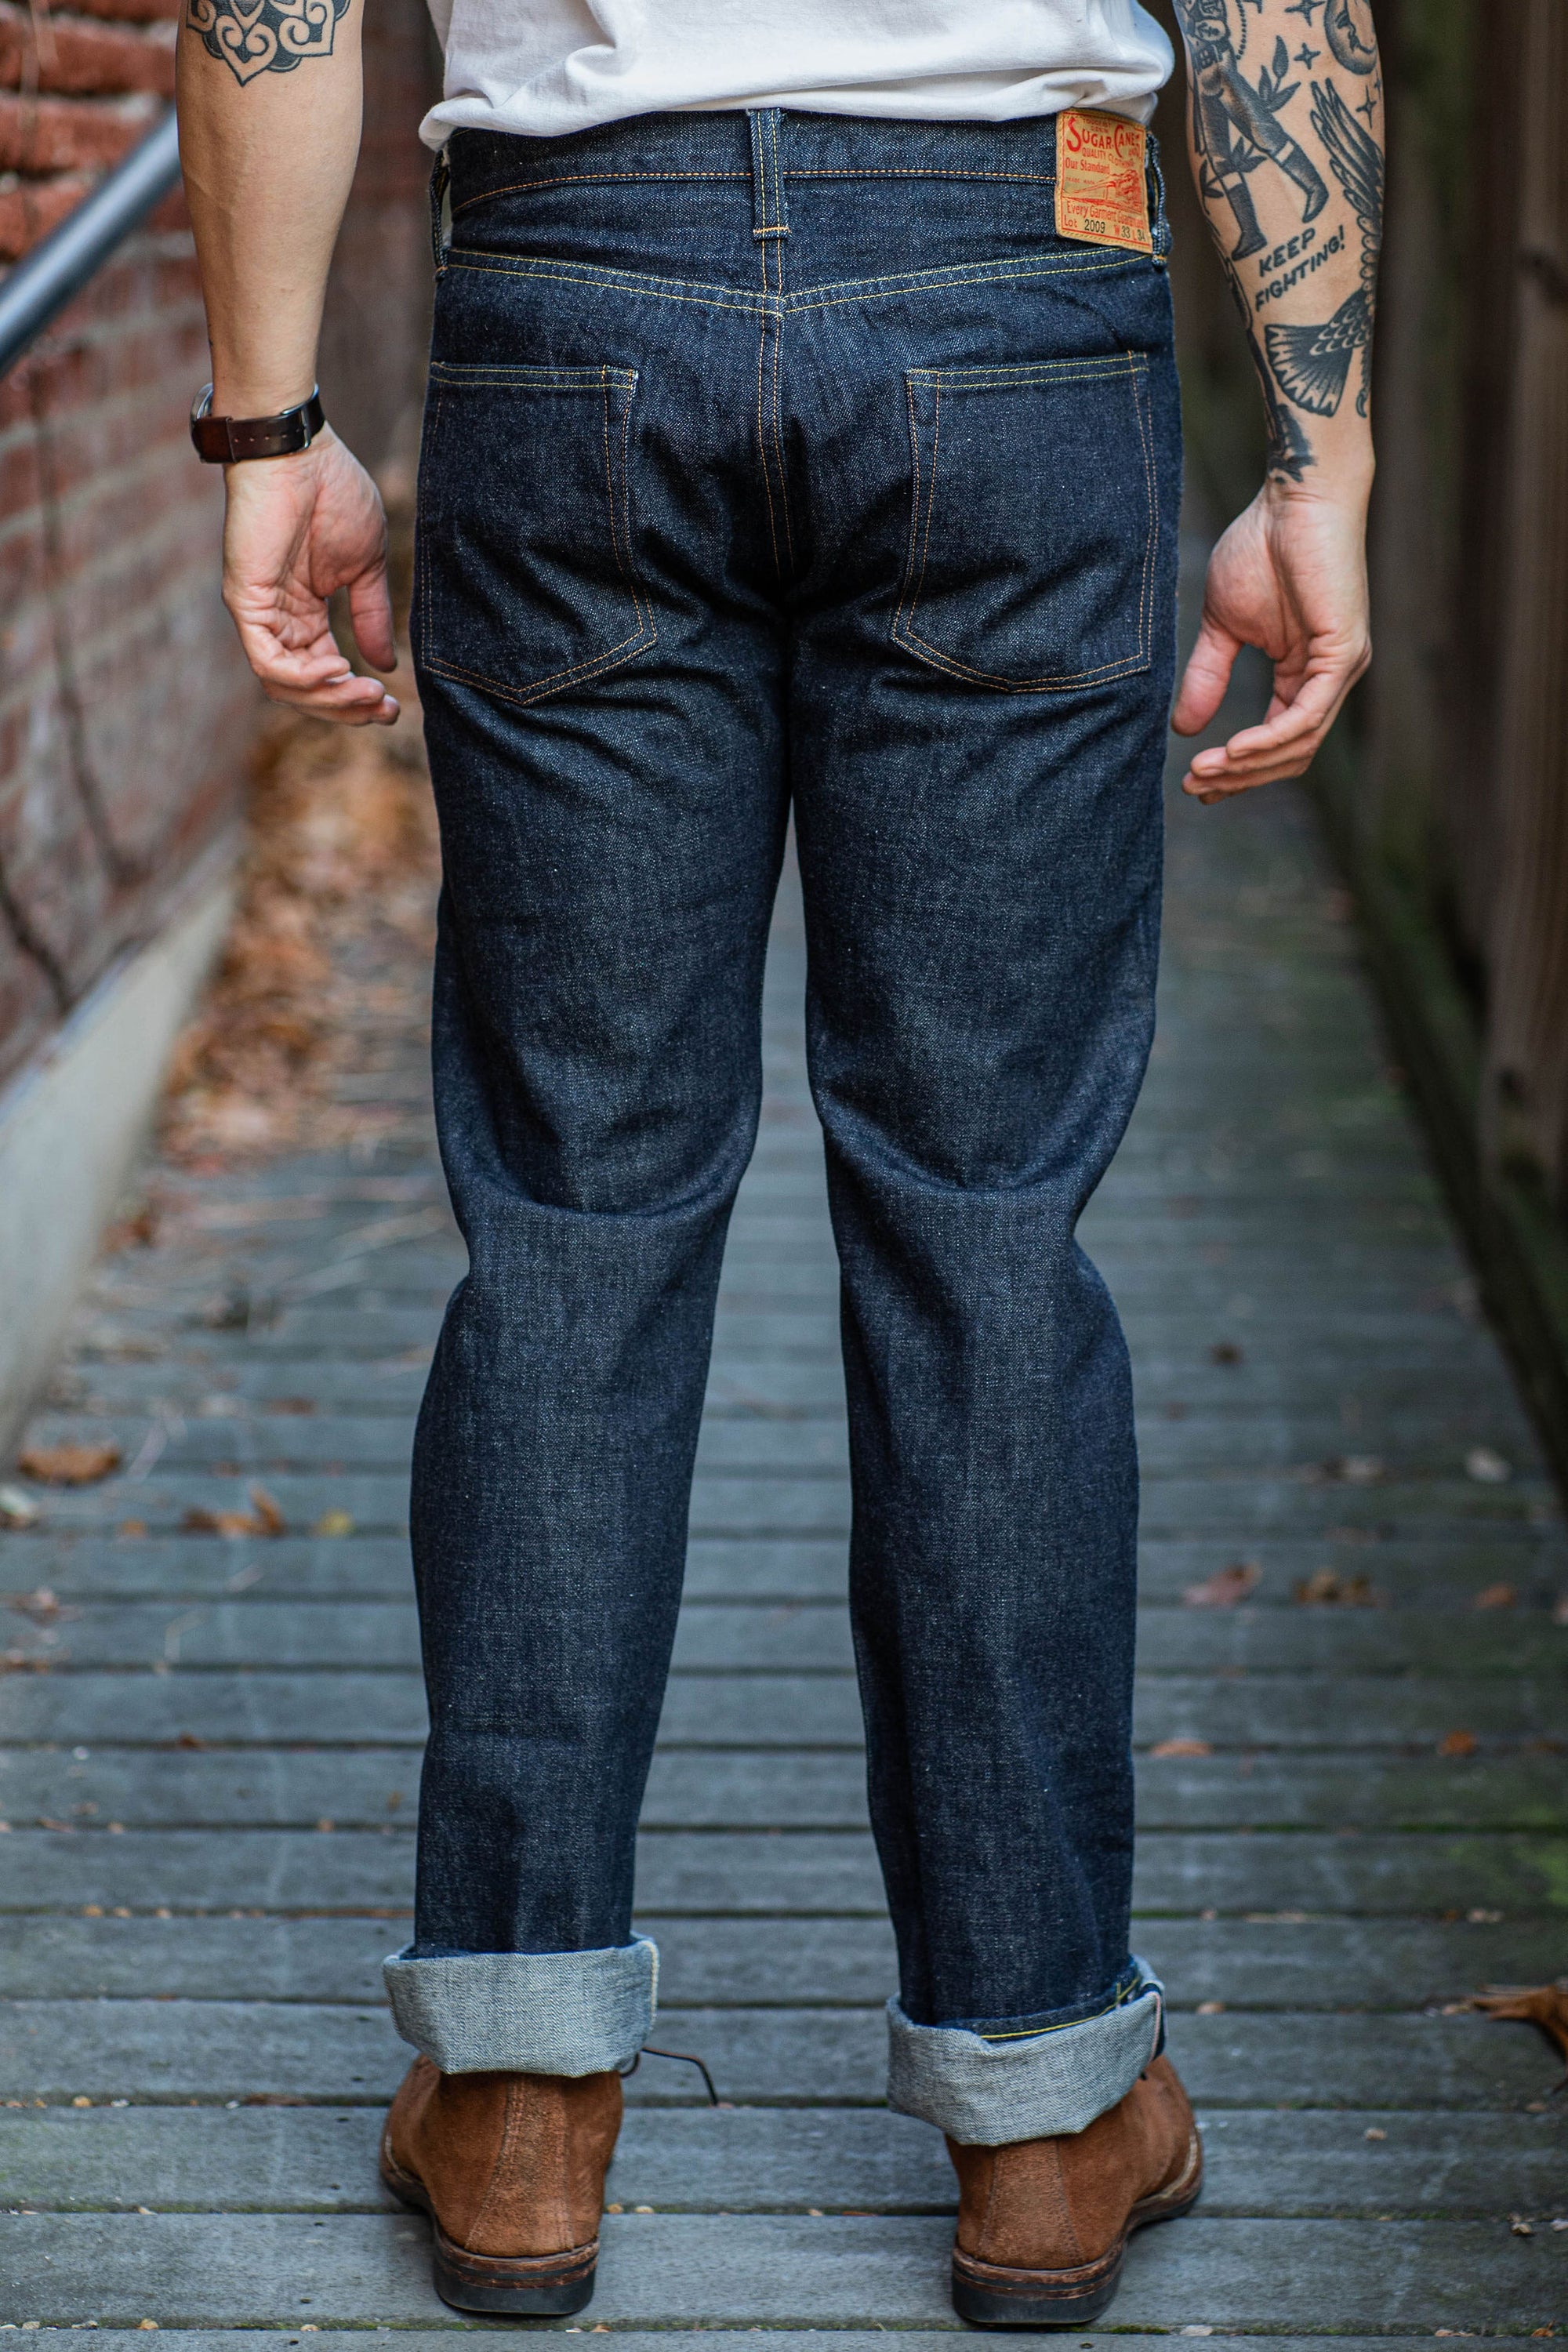 What Changes in Raw Denim Jeans Post Wash & Wear | Denim BMC